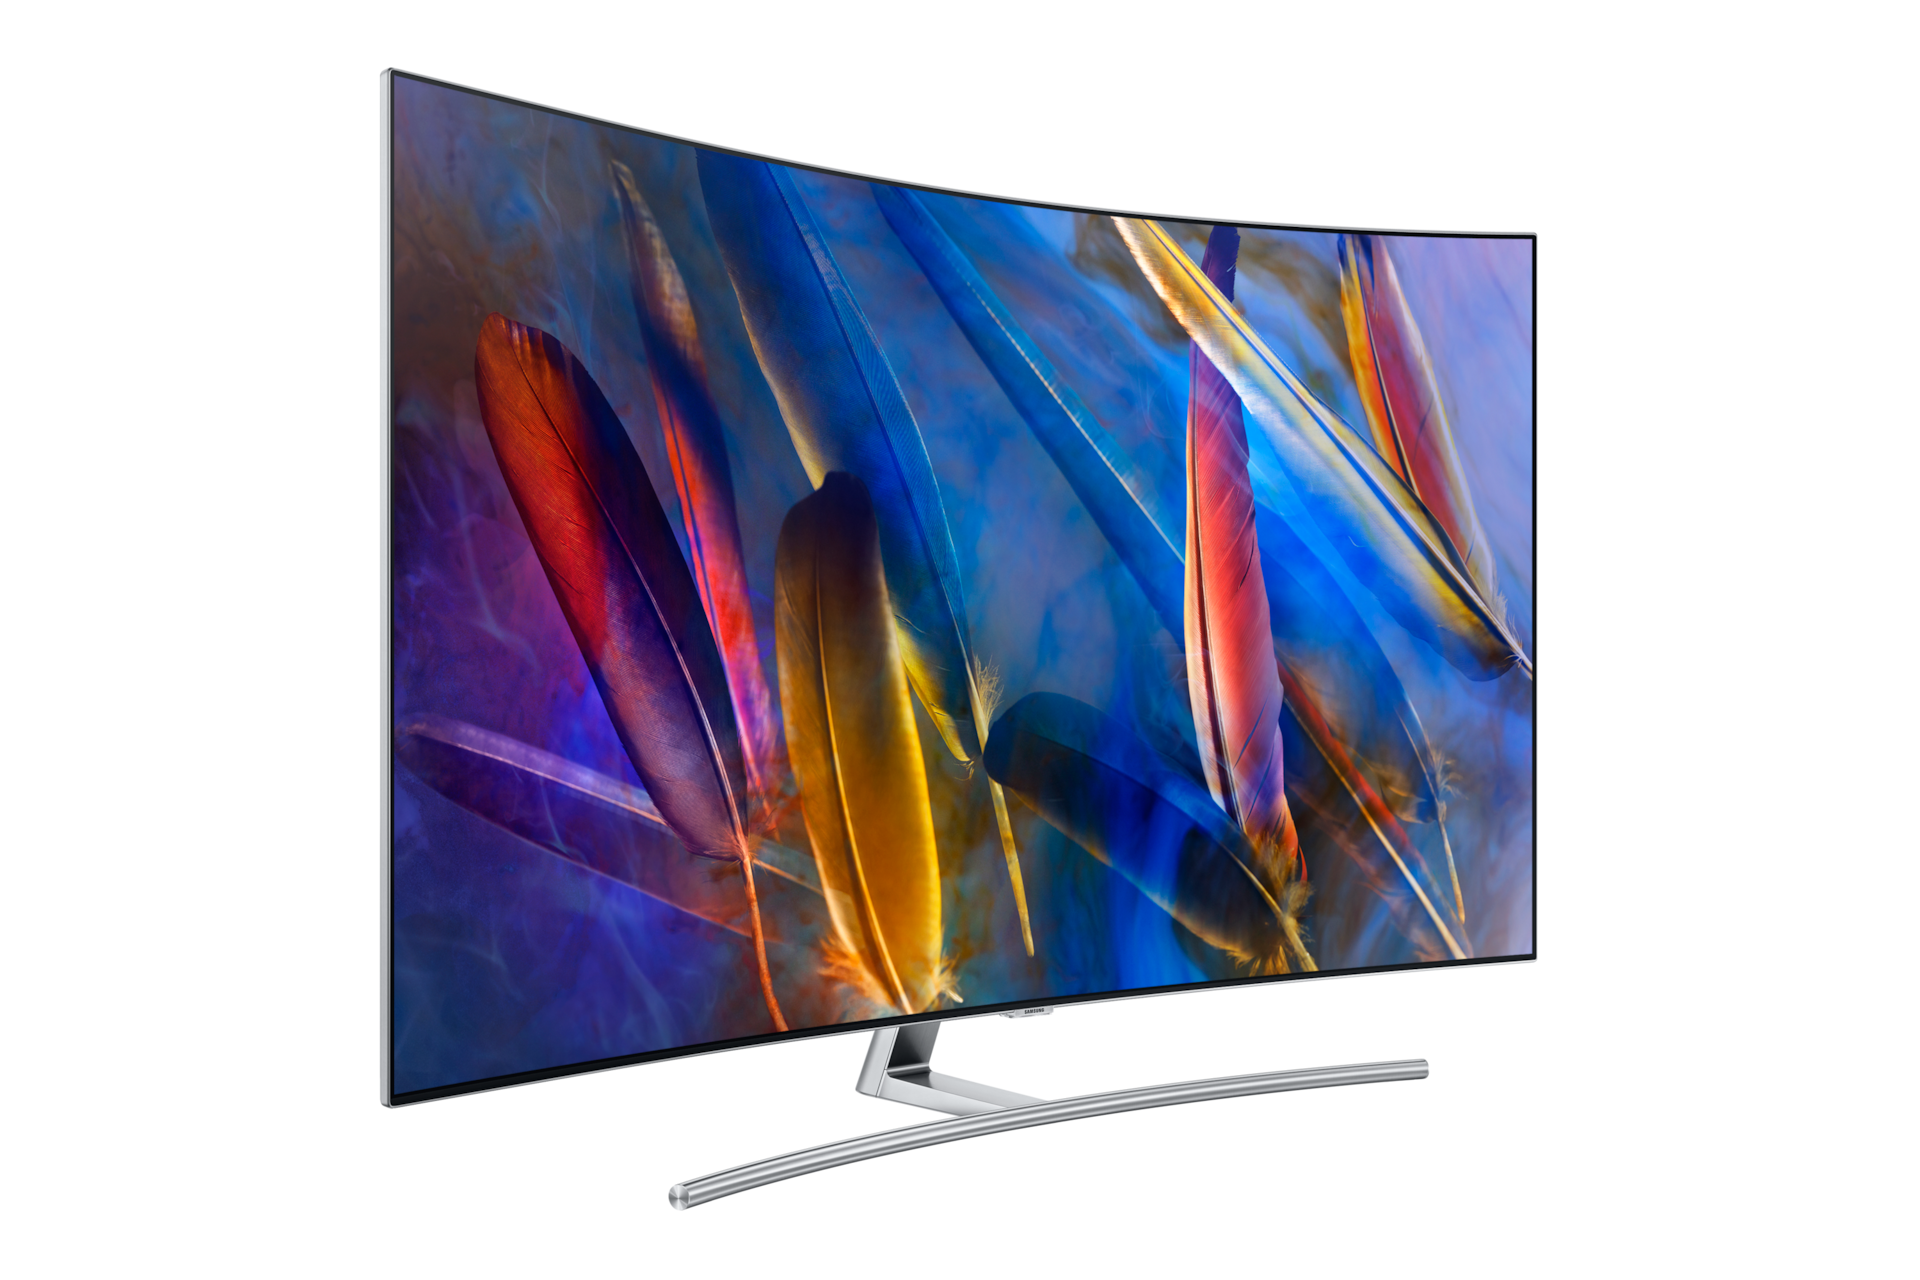 Samsung QLED 65Q65C - TV - LDLC